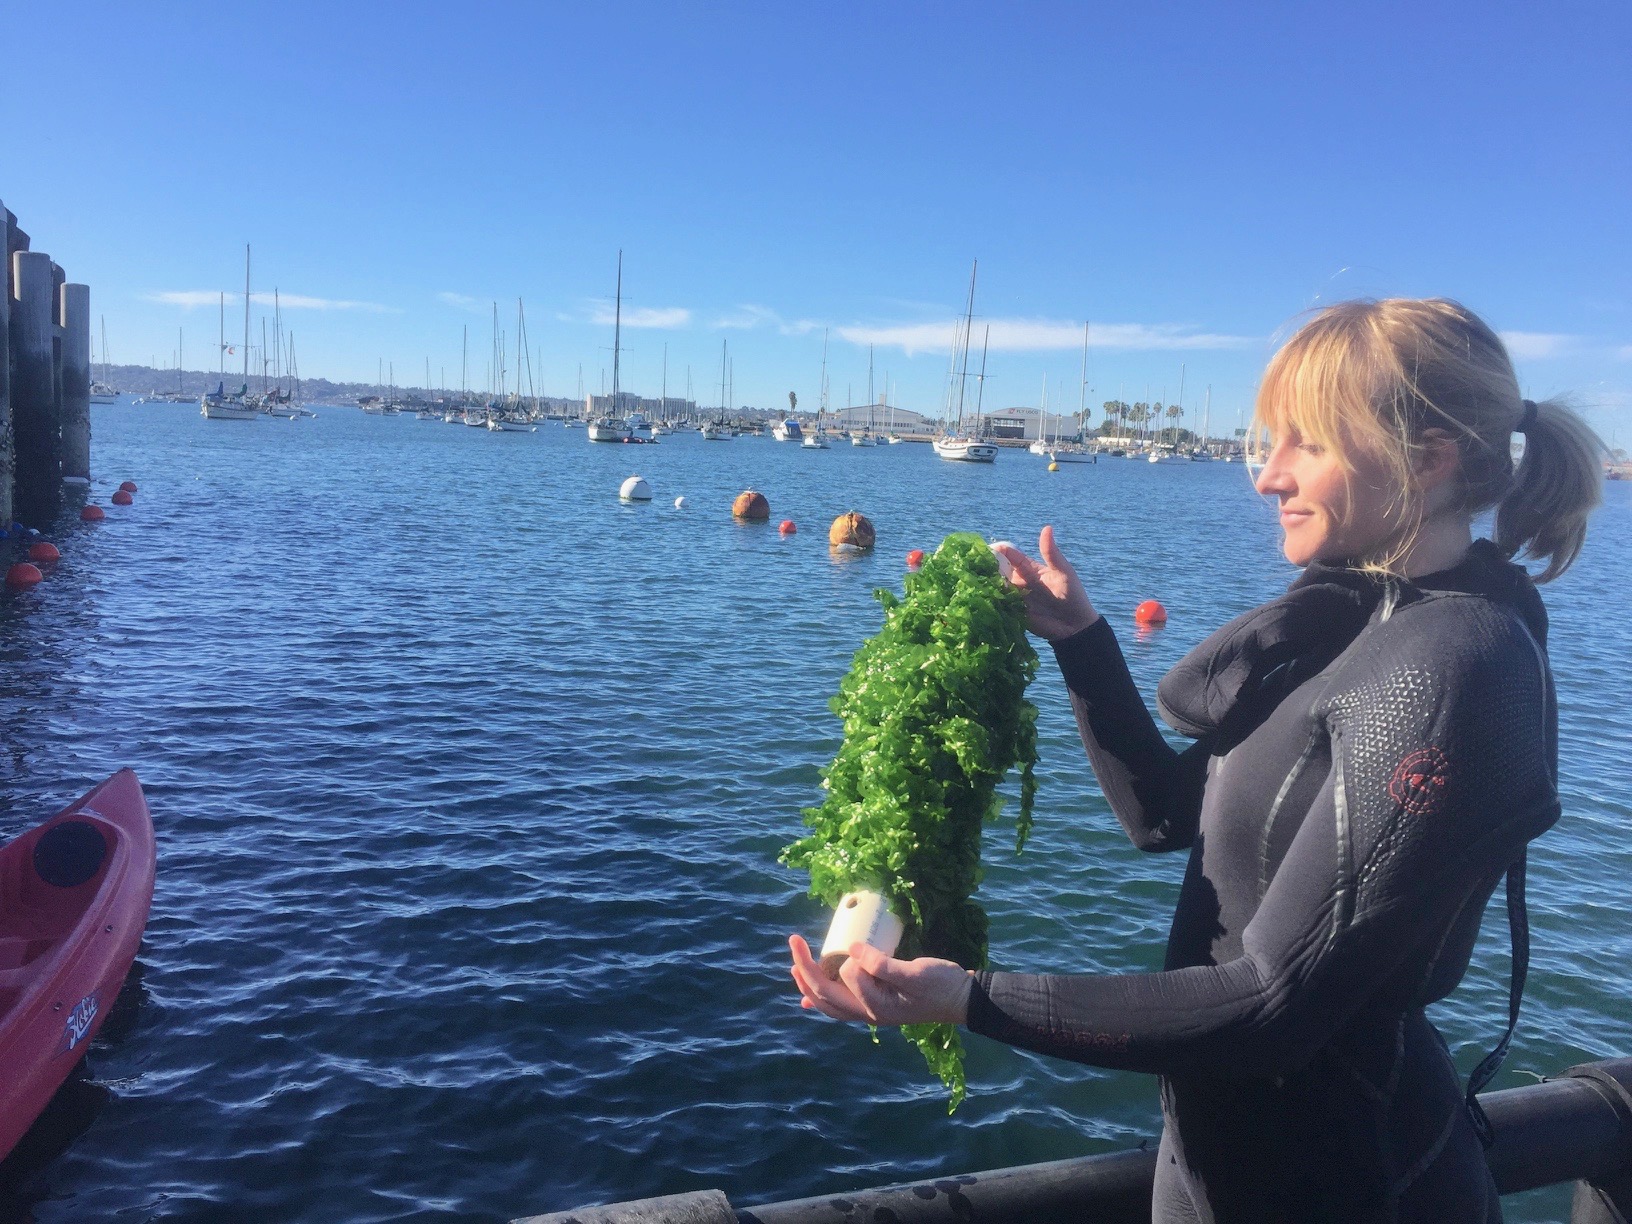 Leslie Booher with Sunken Seaweed shows off farmed seaweed grown in San Diego Bay.